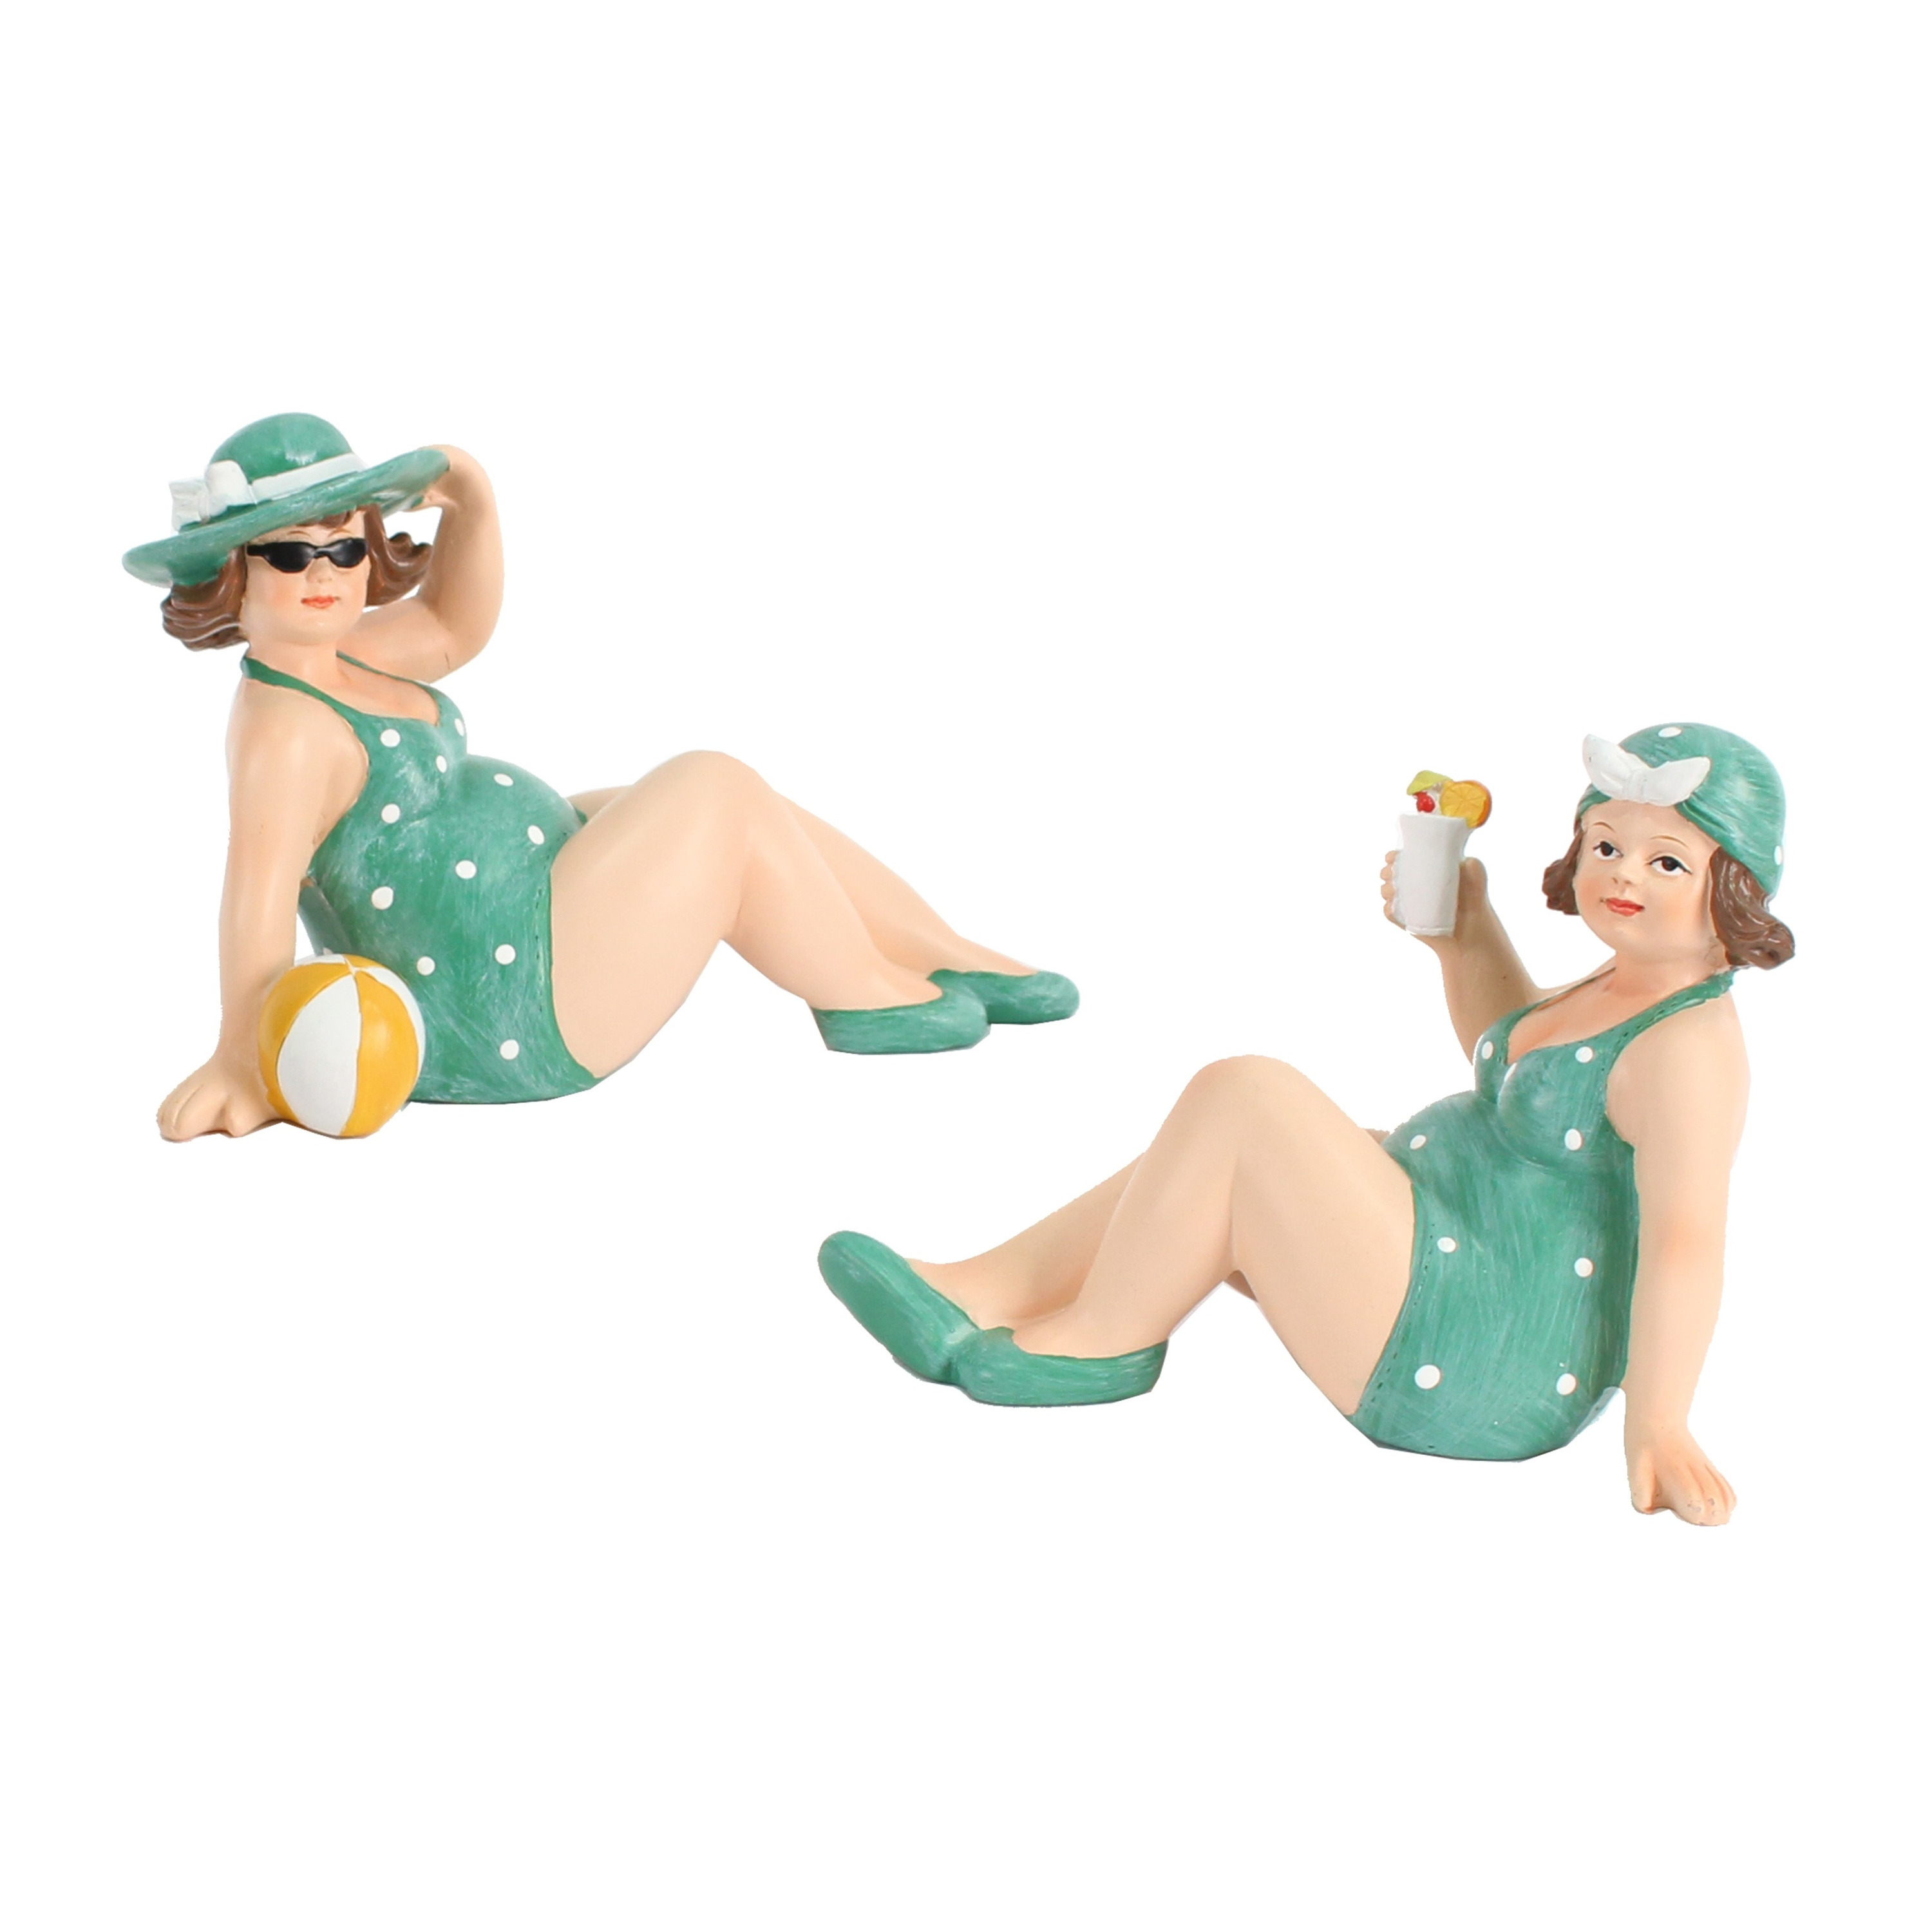 Woonkamer decoratie beeldjes set van 2 dikke dames groen badpak 17 cm